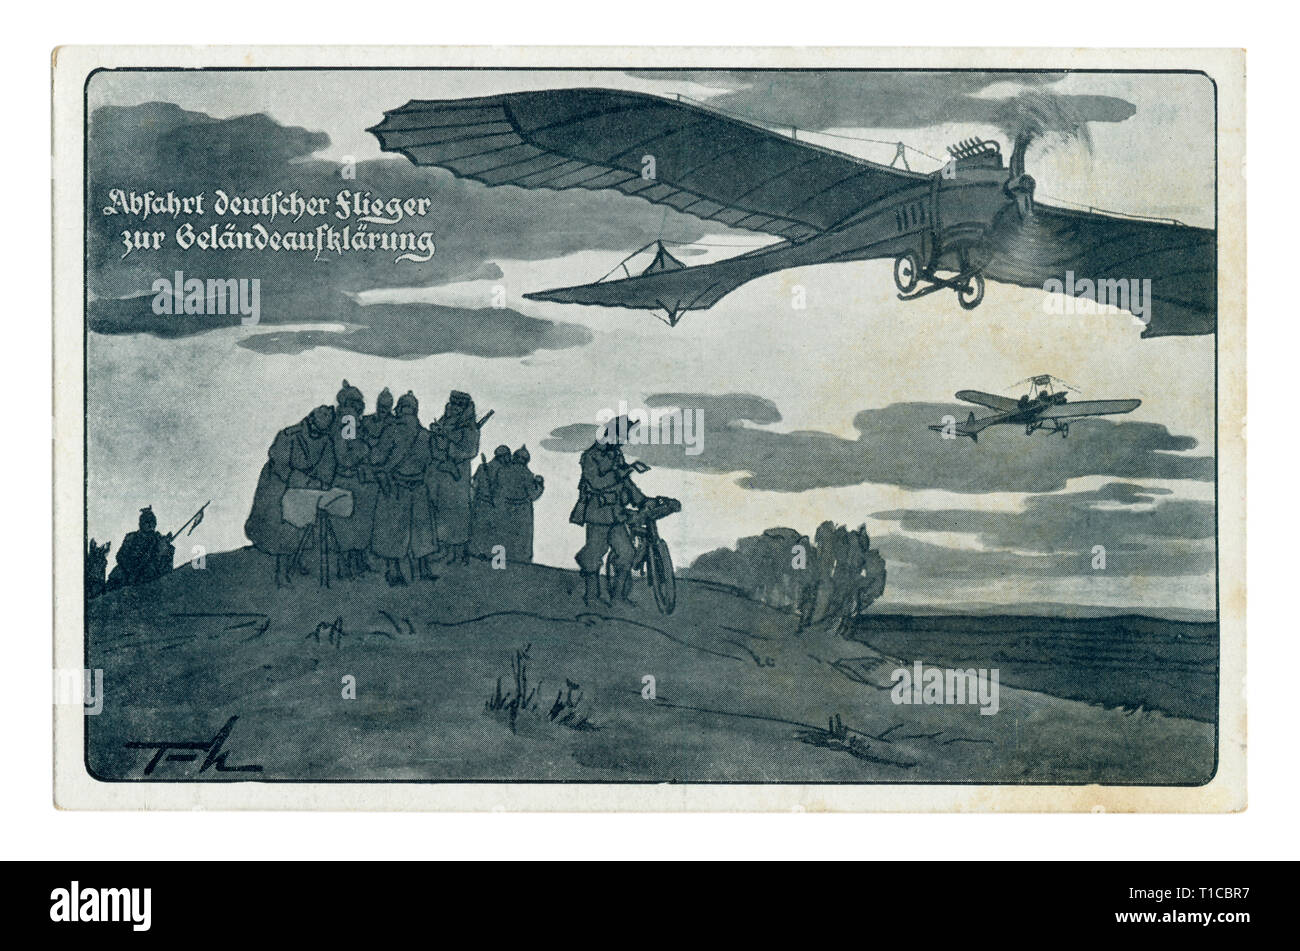 Carte postale historique allemand : l'aviateurs allemands ont reçu des commandes pour la reconnaissance de la région. Les avions volent dans des directions différentes, la première guerre mondiale Banque D'Images